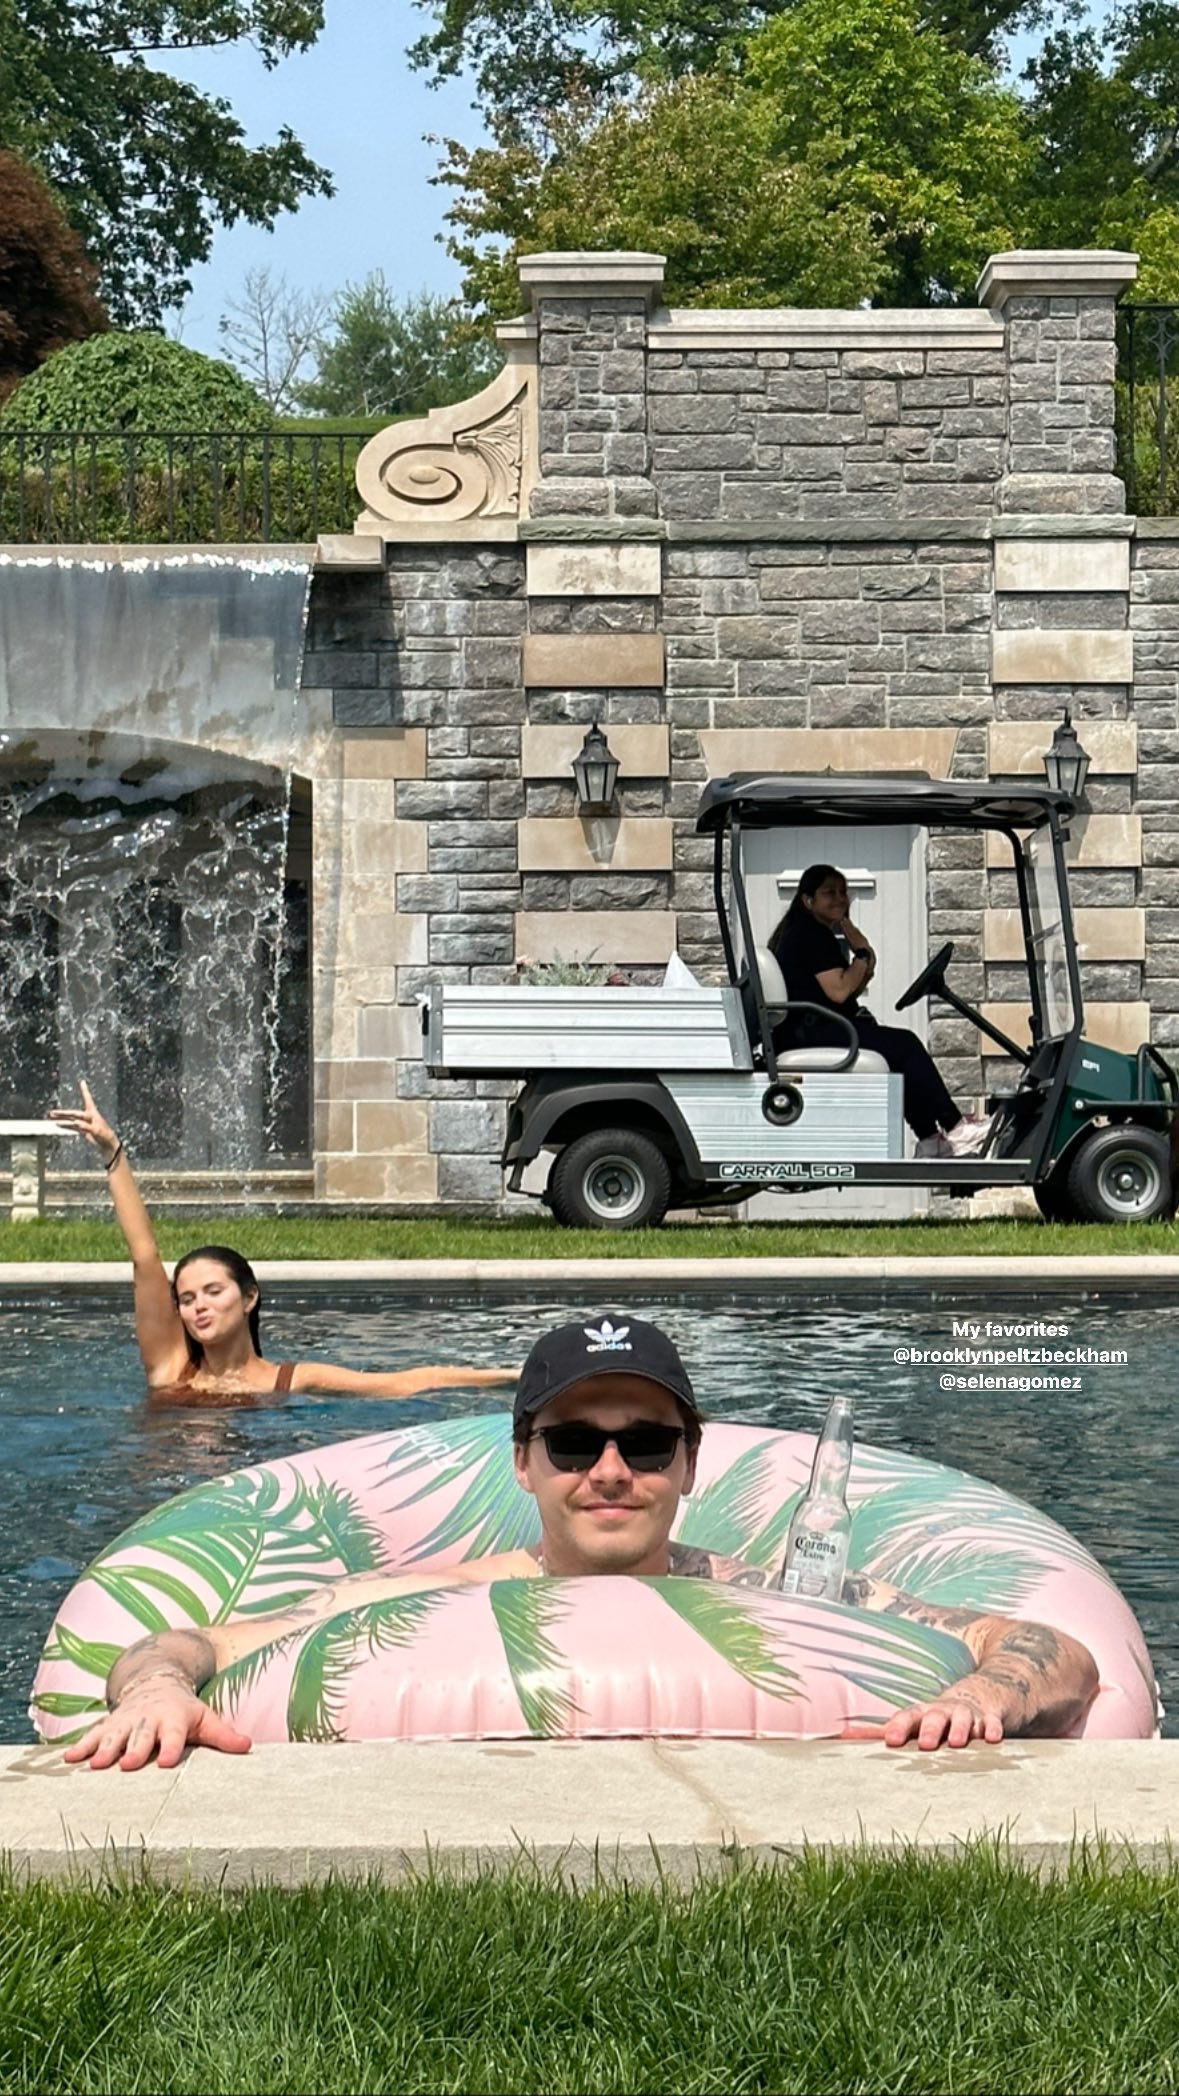 Photos n°31 : Selena Gomez Rocks the Boat in a Pink Bikini!